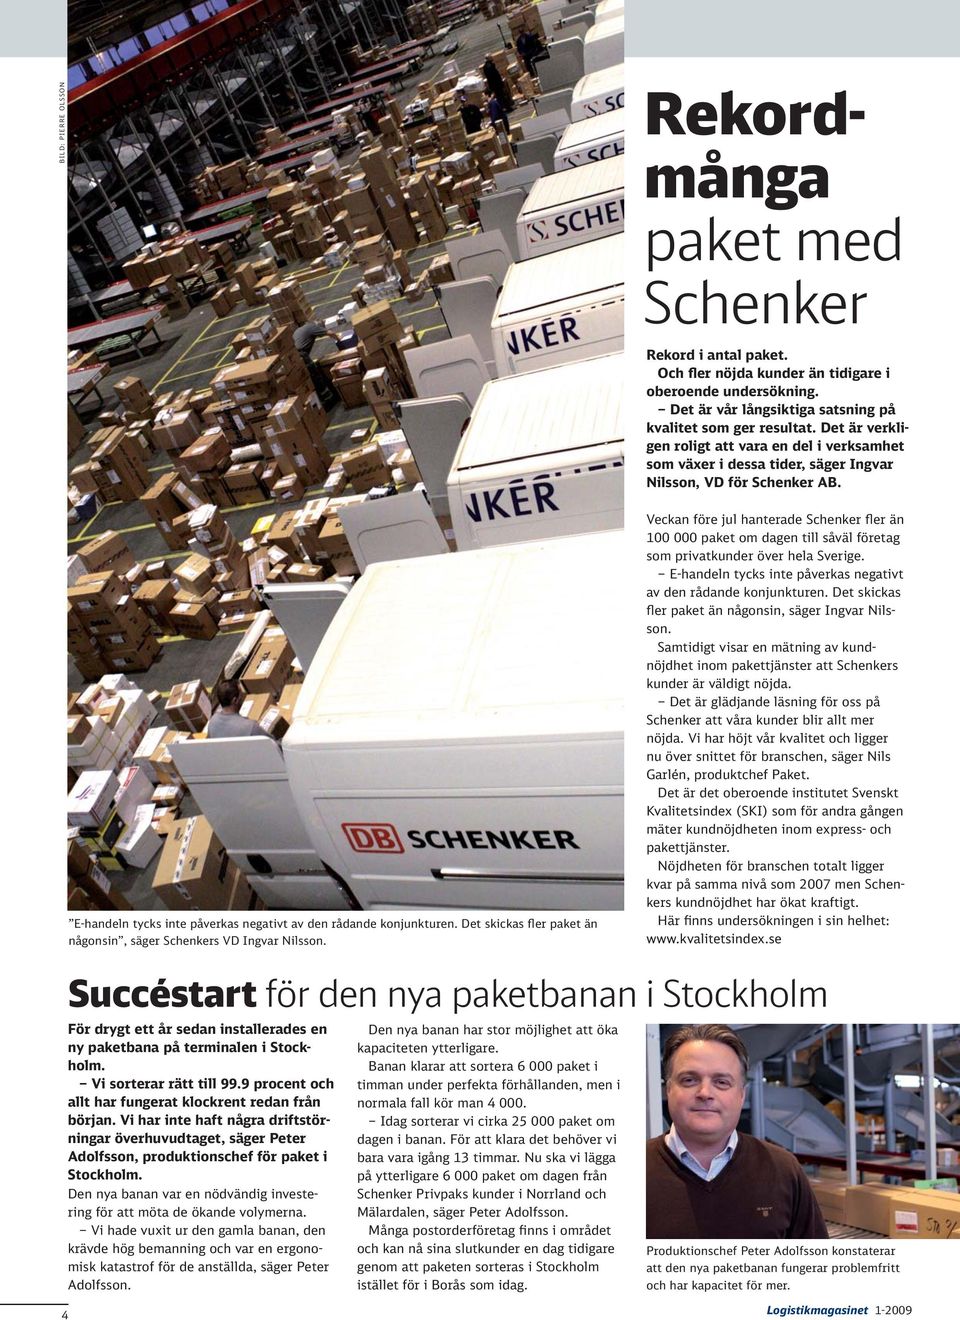 Det skickas fler paket än någonsin, säger Schenkers VD Ingvar Nilsson. Veckan före jul hanterade Schenker fler än 100 000 paket om dagen till såväl företag som privatkunder över hela Sverige.